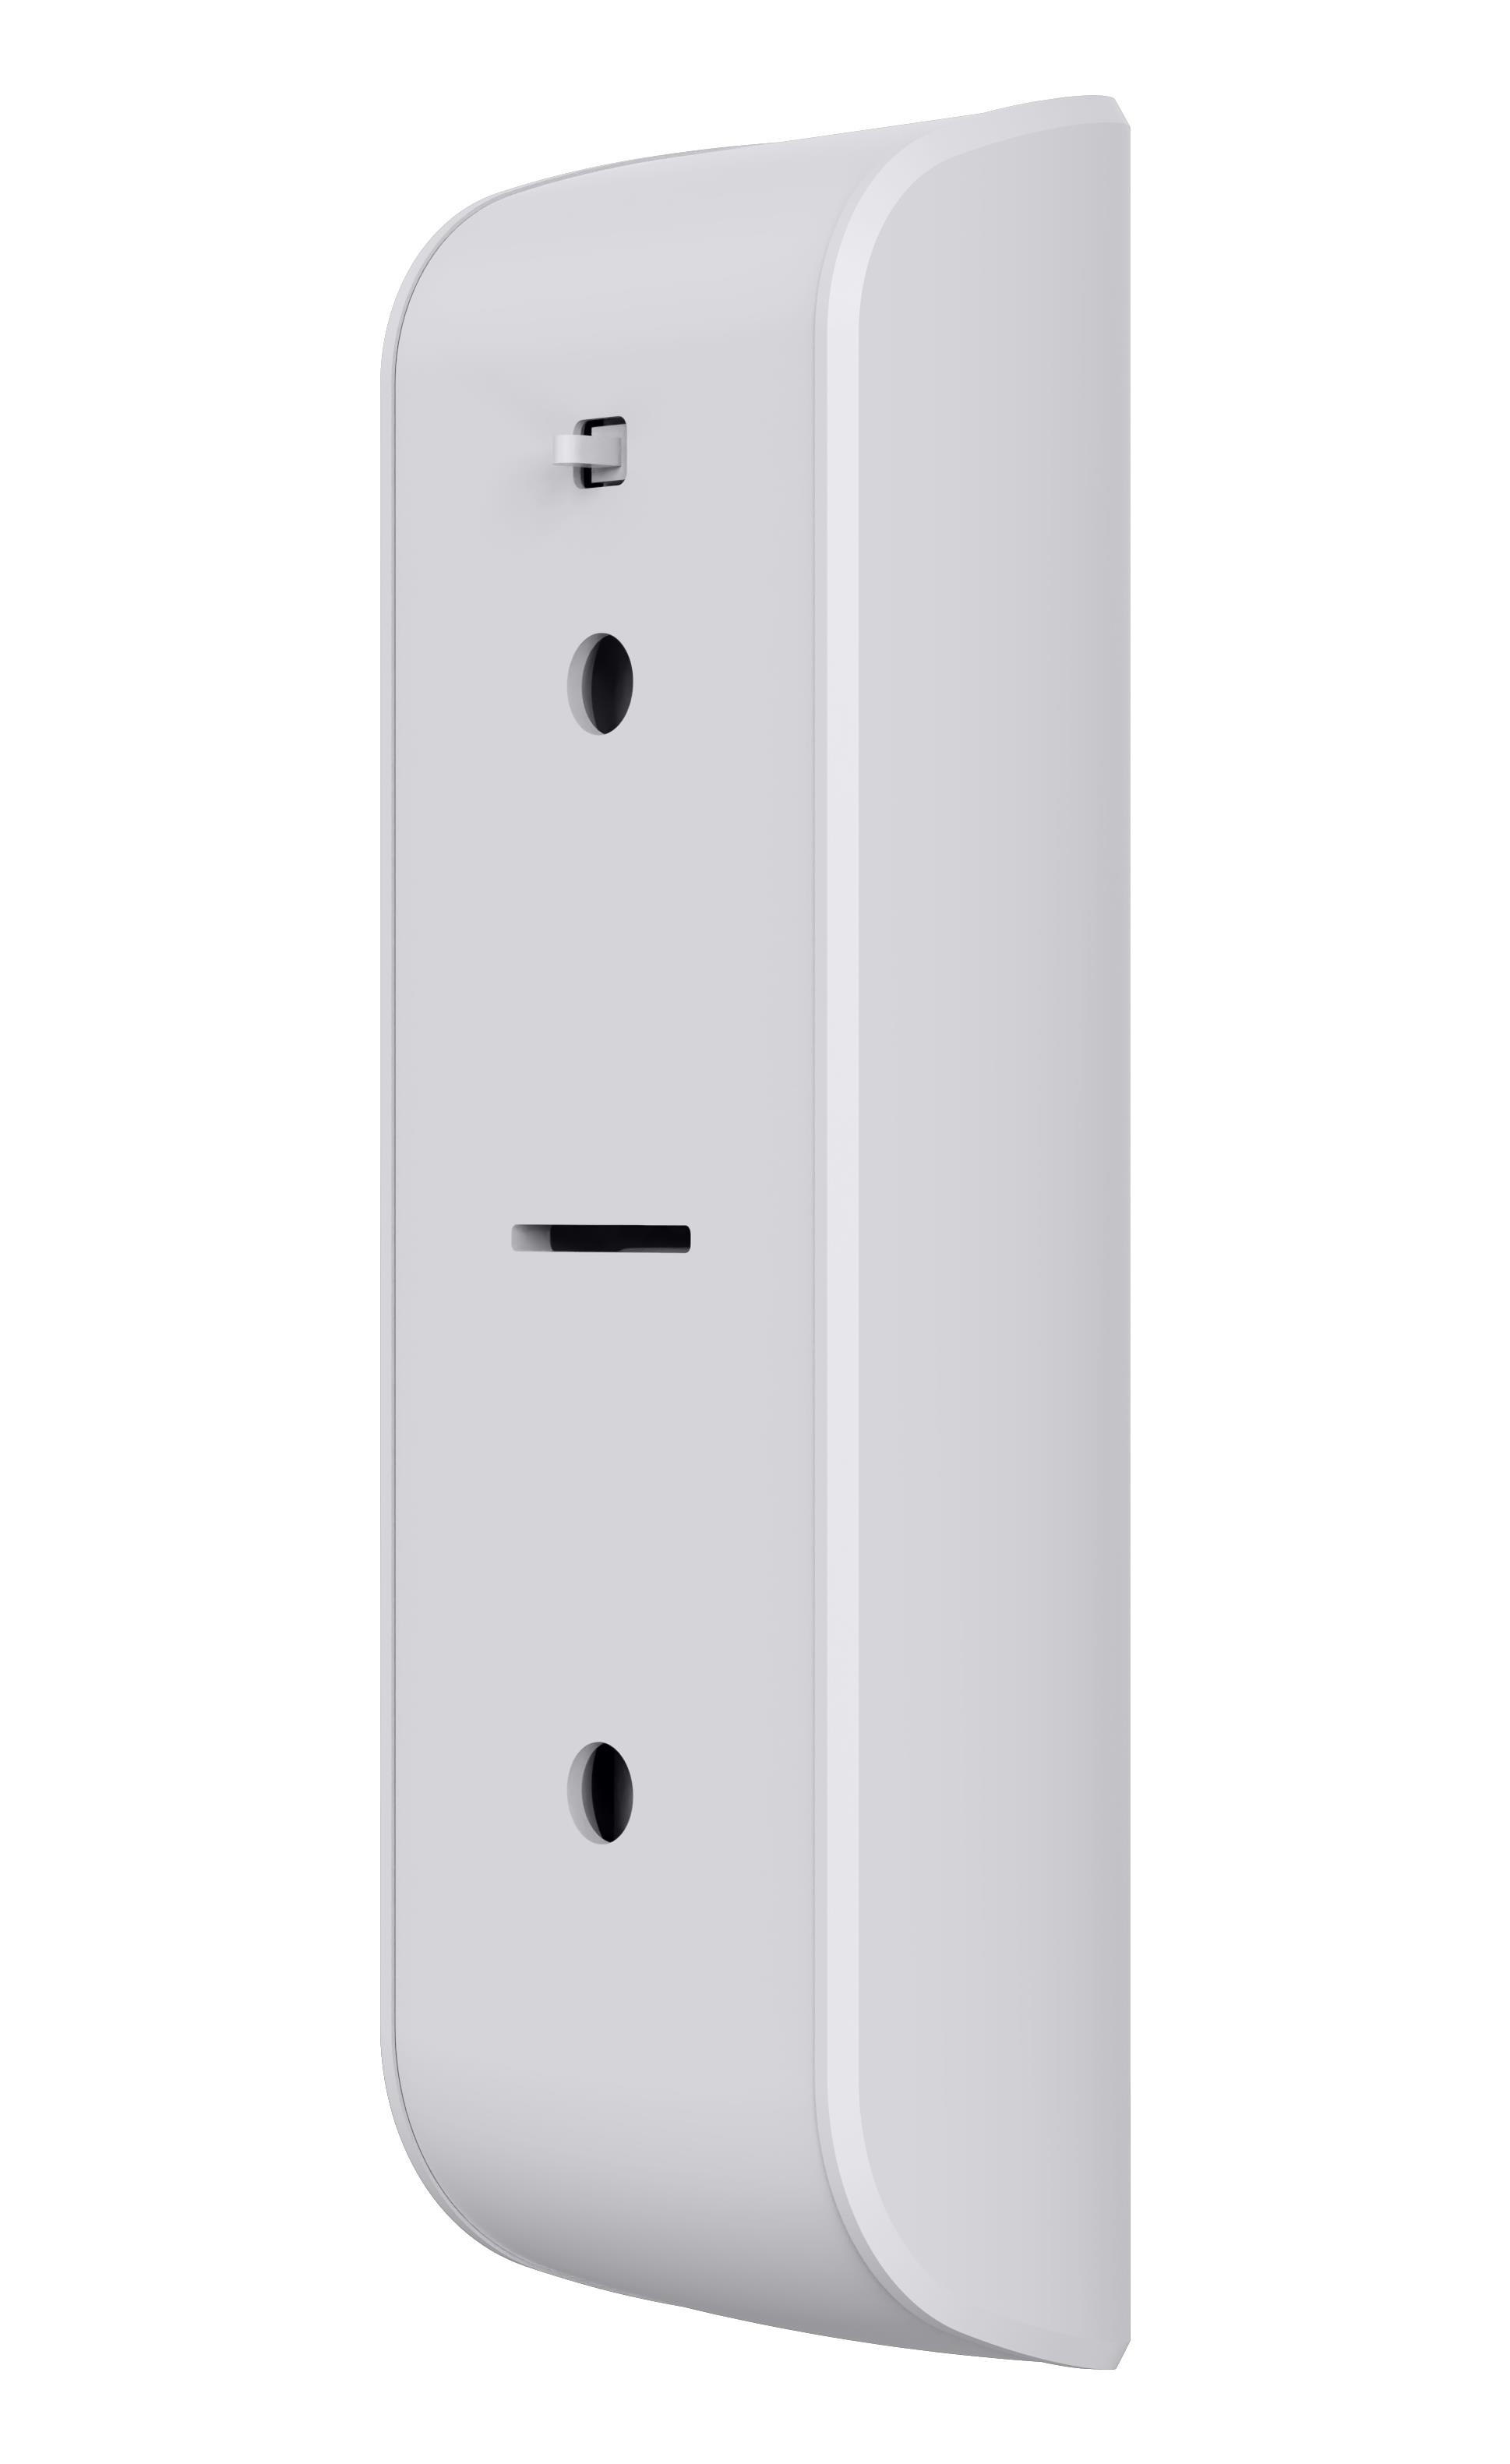 Obrázek iGET SECURITY EP10 - bezdrátový senzor vibrací (rozbití skla apod.) pro alarm M5